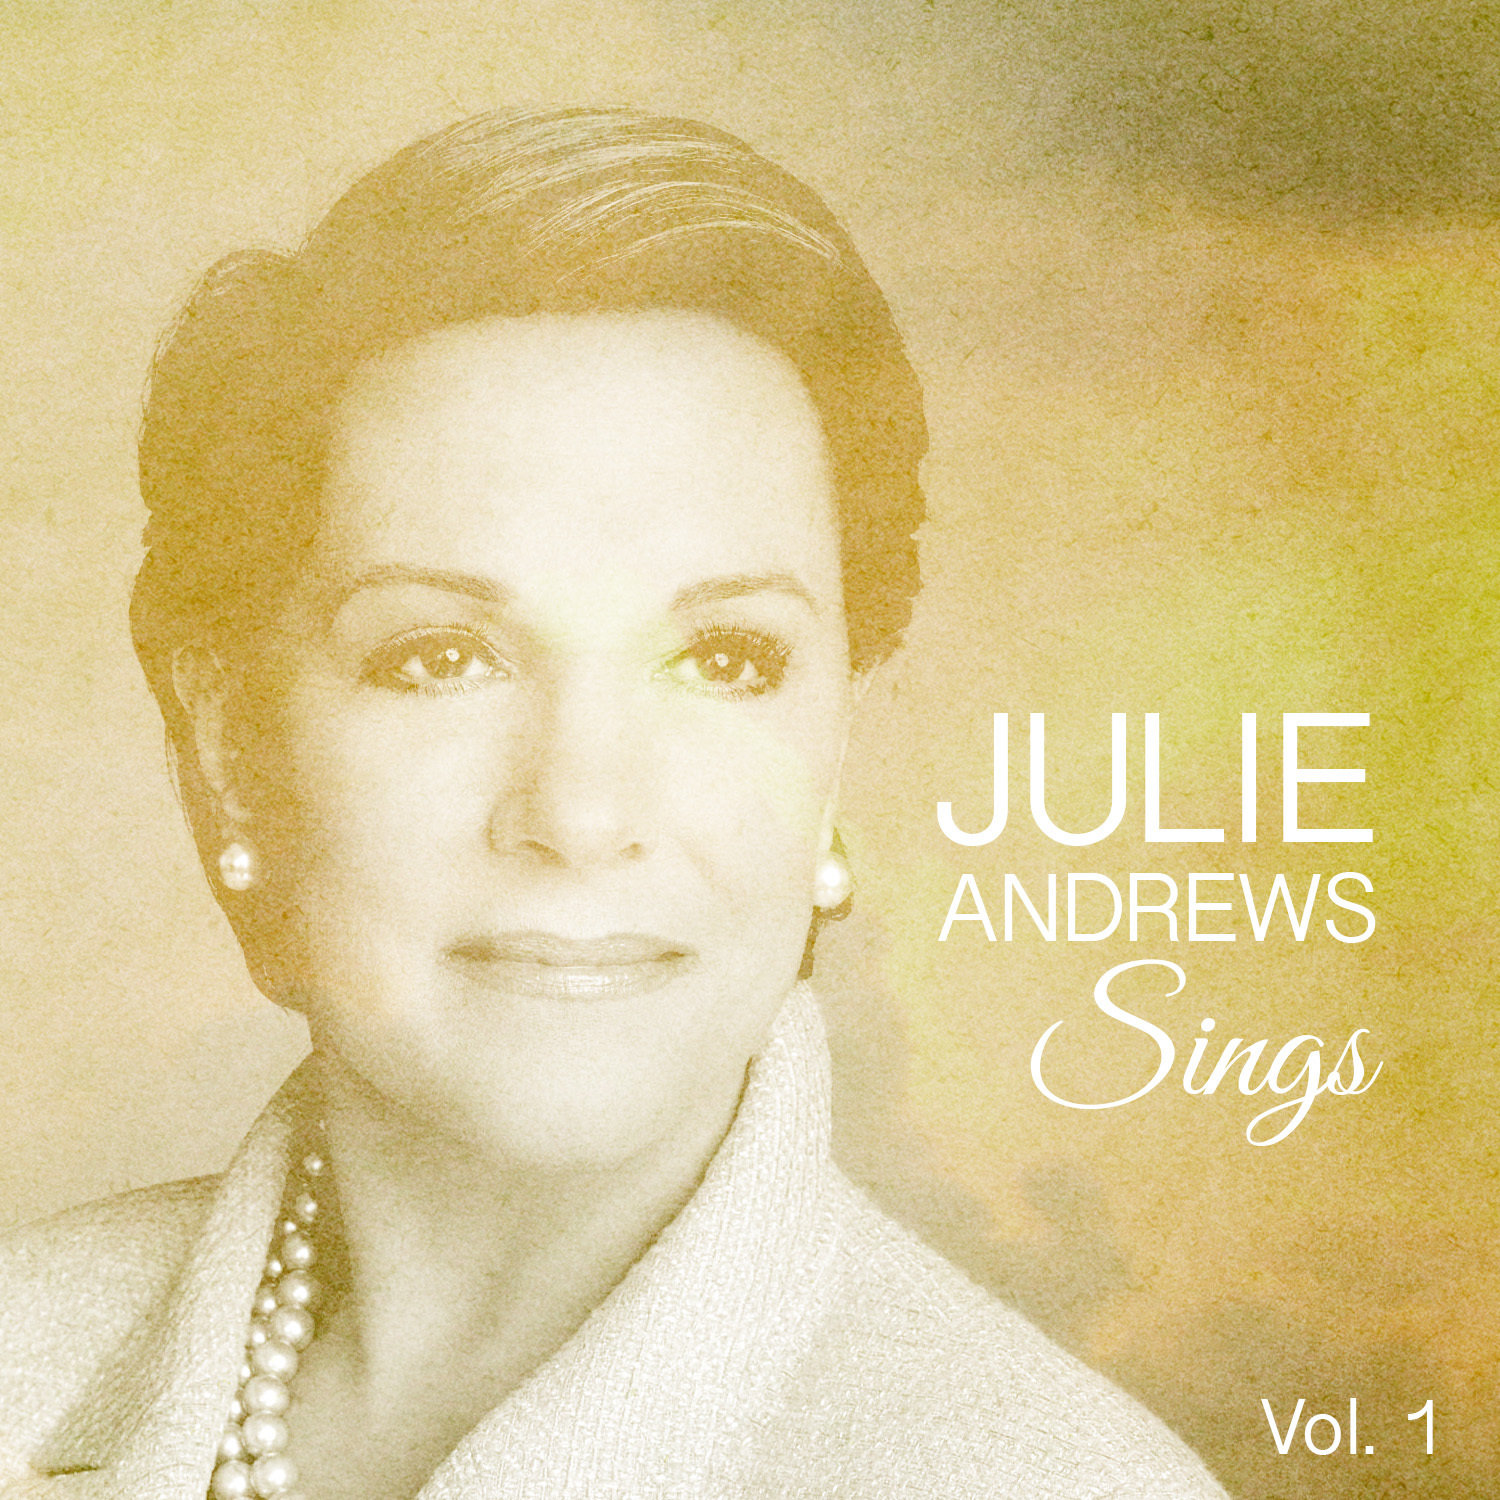 He sings well. Julie Andrews. Julie Andrews my favorite things.